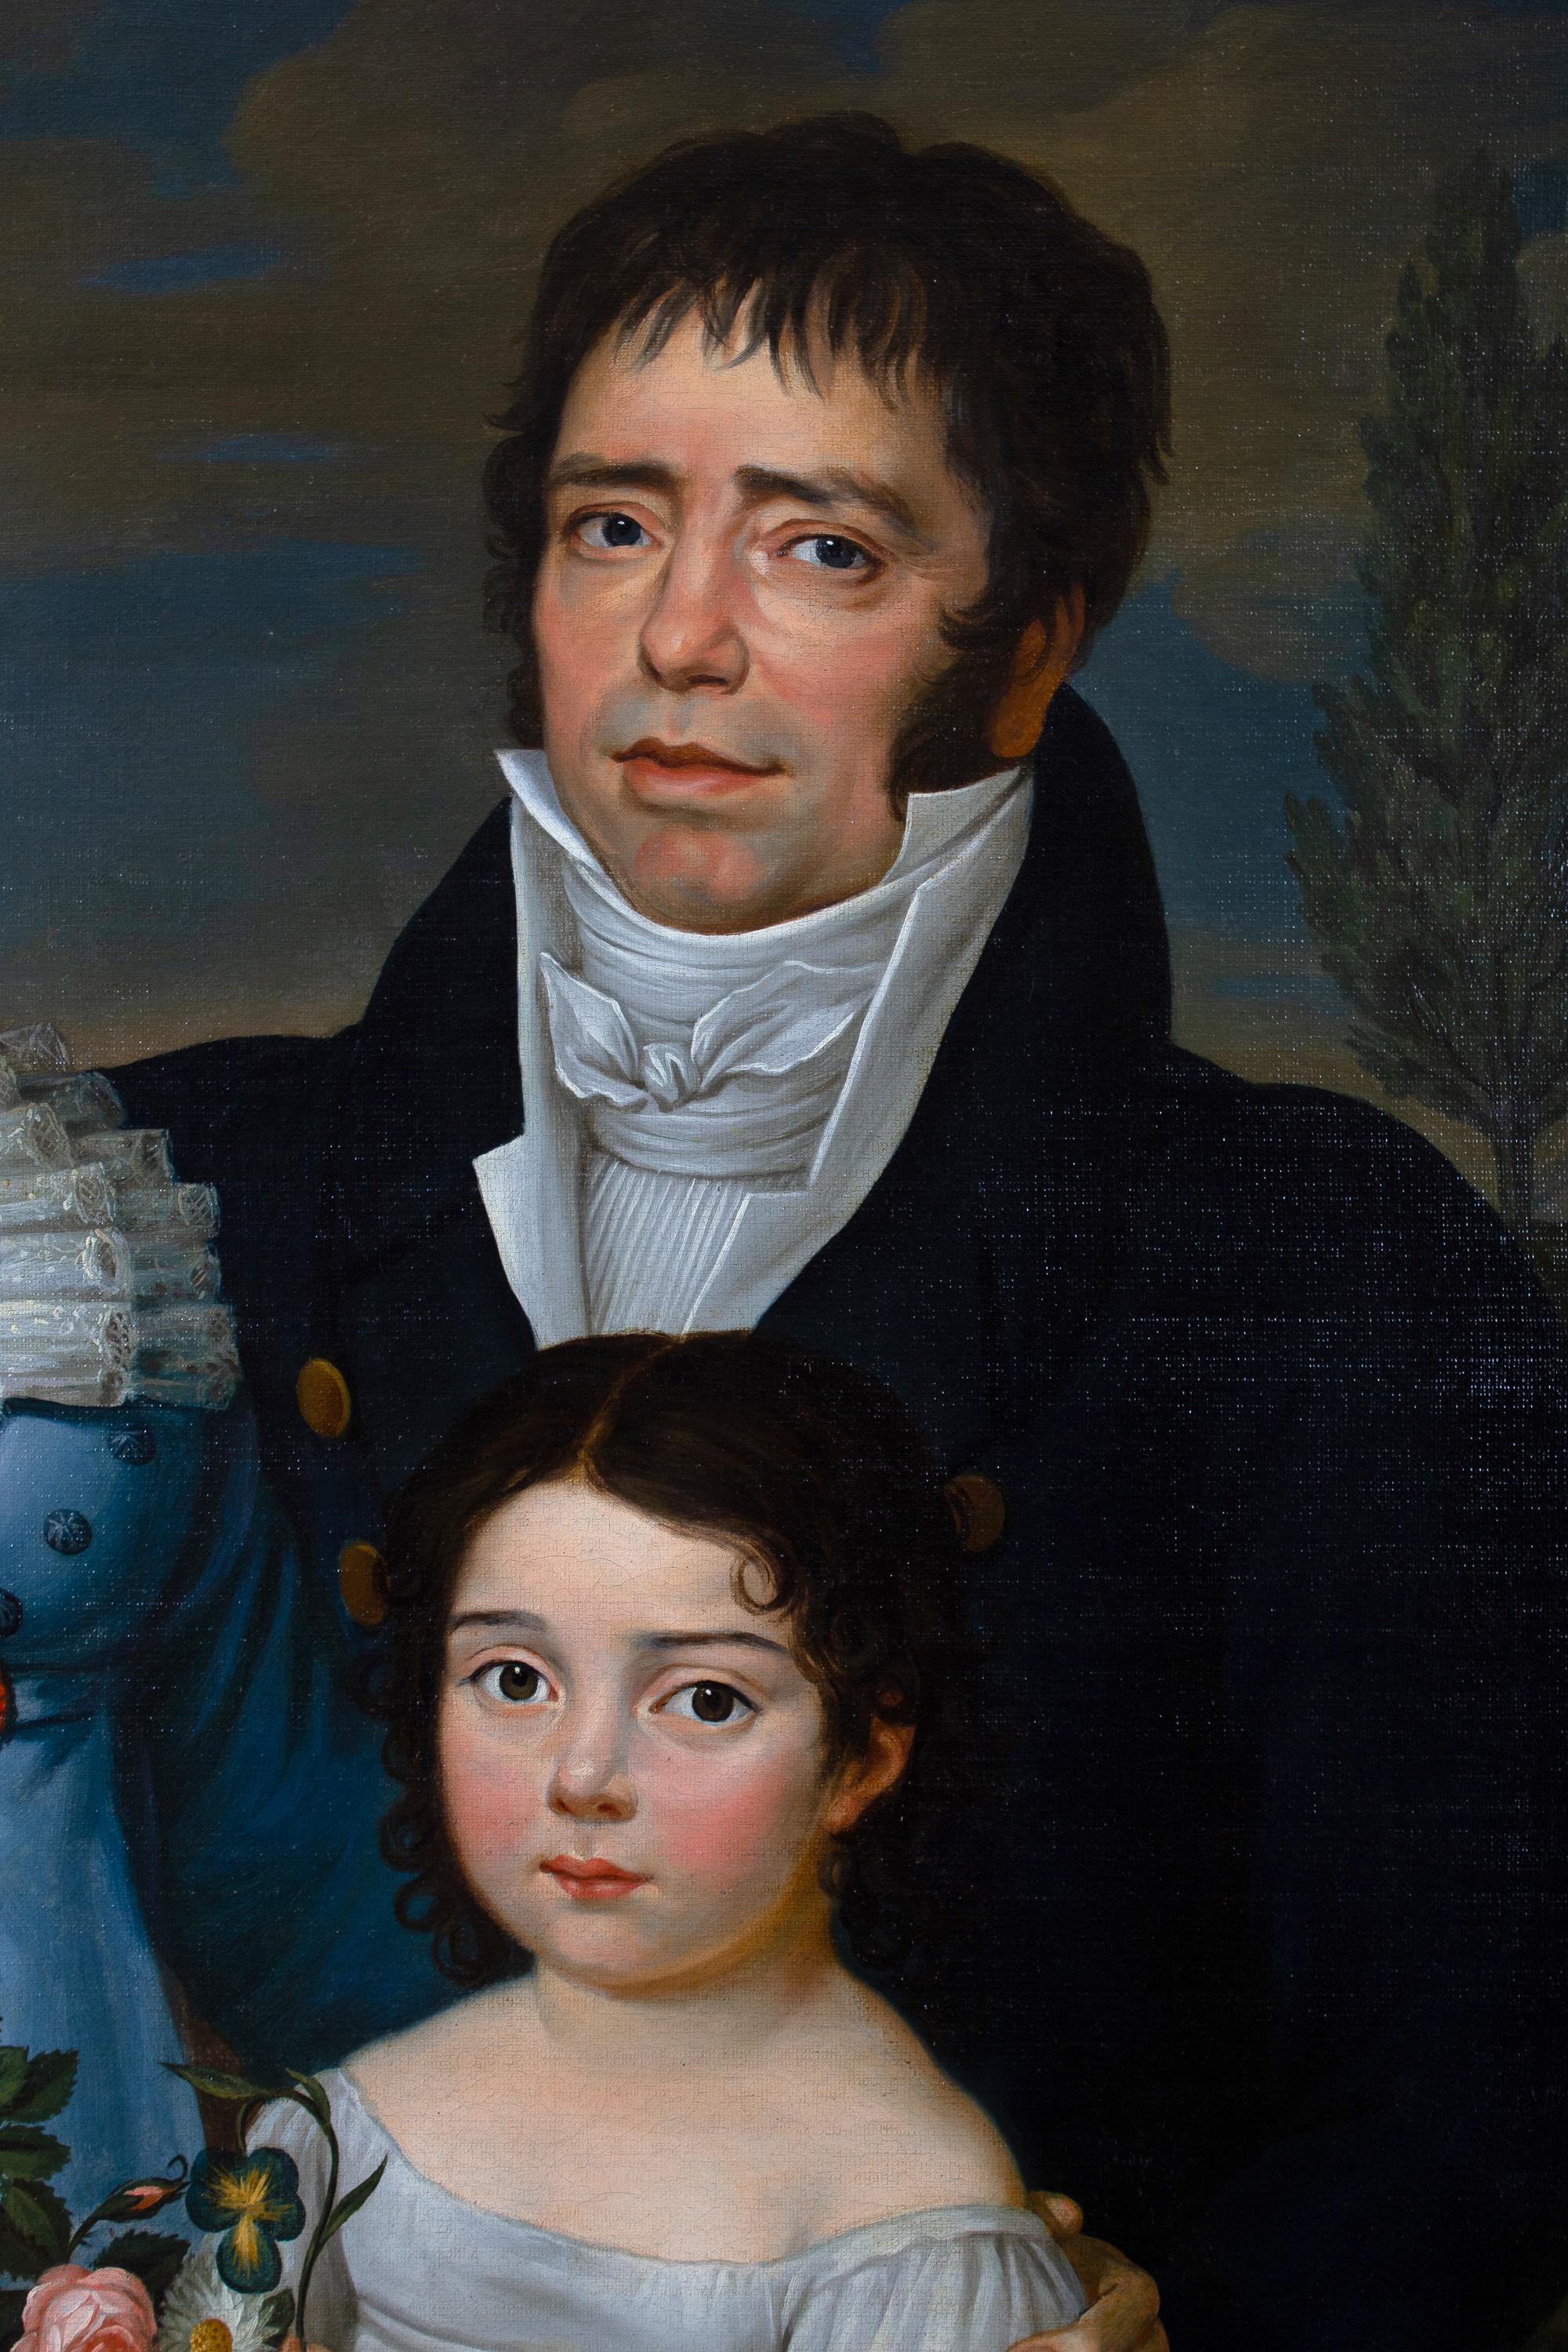 painted family portrait